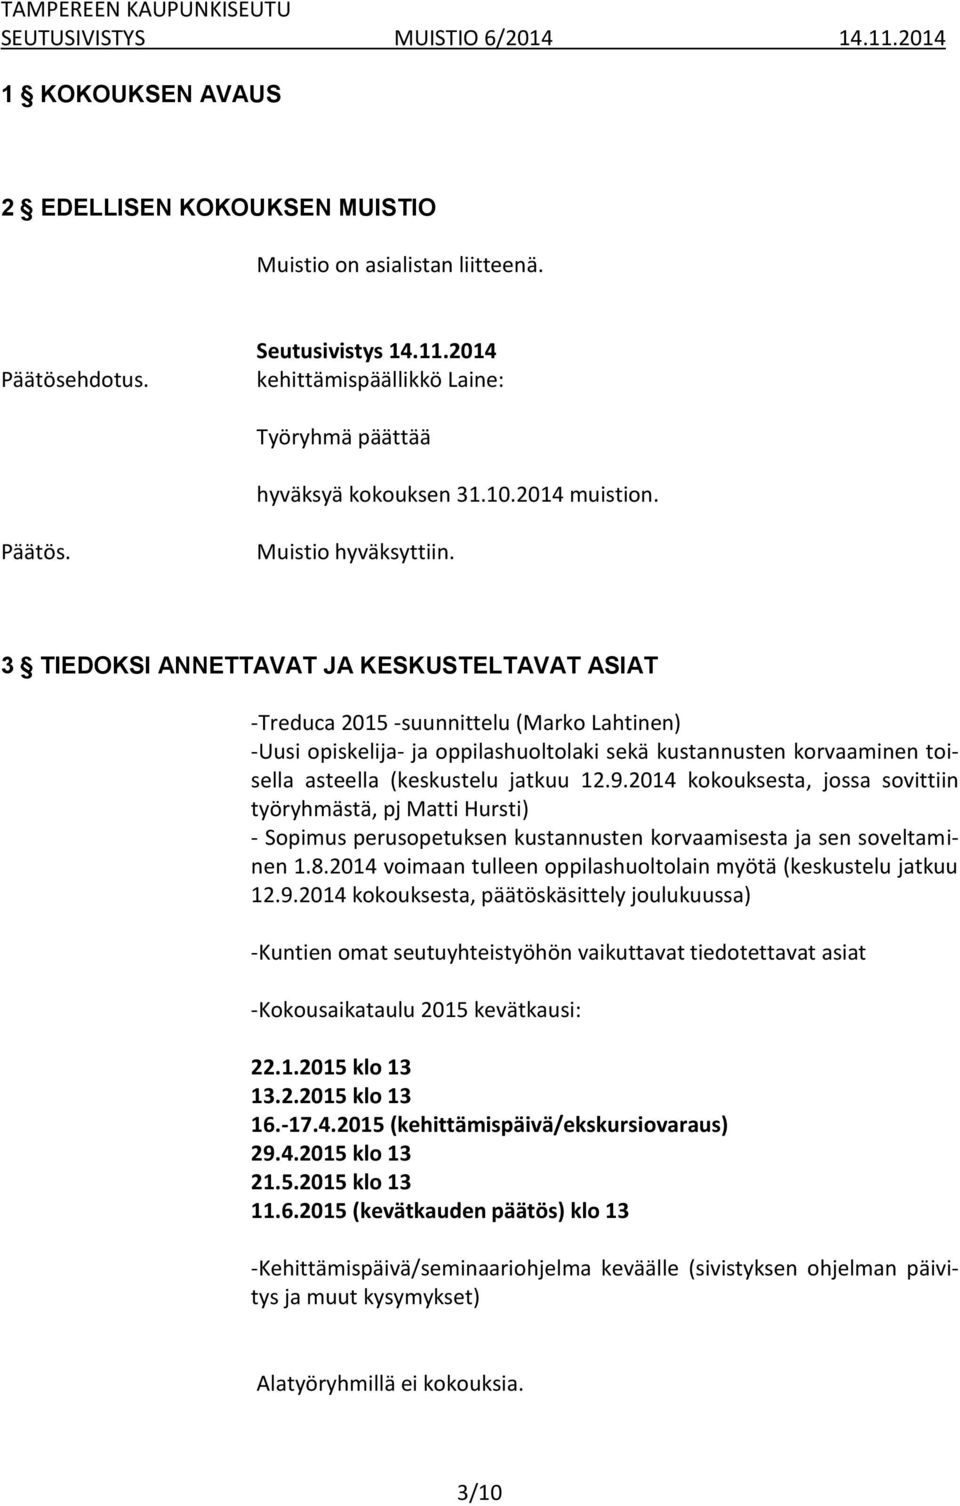 3 TIEDOKSI ANNETTAVAT JA KESKUSTELTAVAT ASIAT -Treduca 2015 -suunnittelu (Marko Lahtinen) -Uusi opiskelija- ja oppilashuoltolaki sekä kustannusten korvaaminen toisella asteella (keskustelu jatkuu 12.